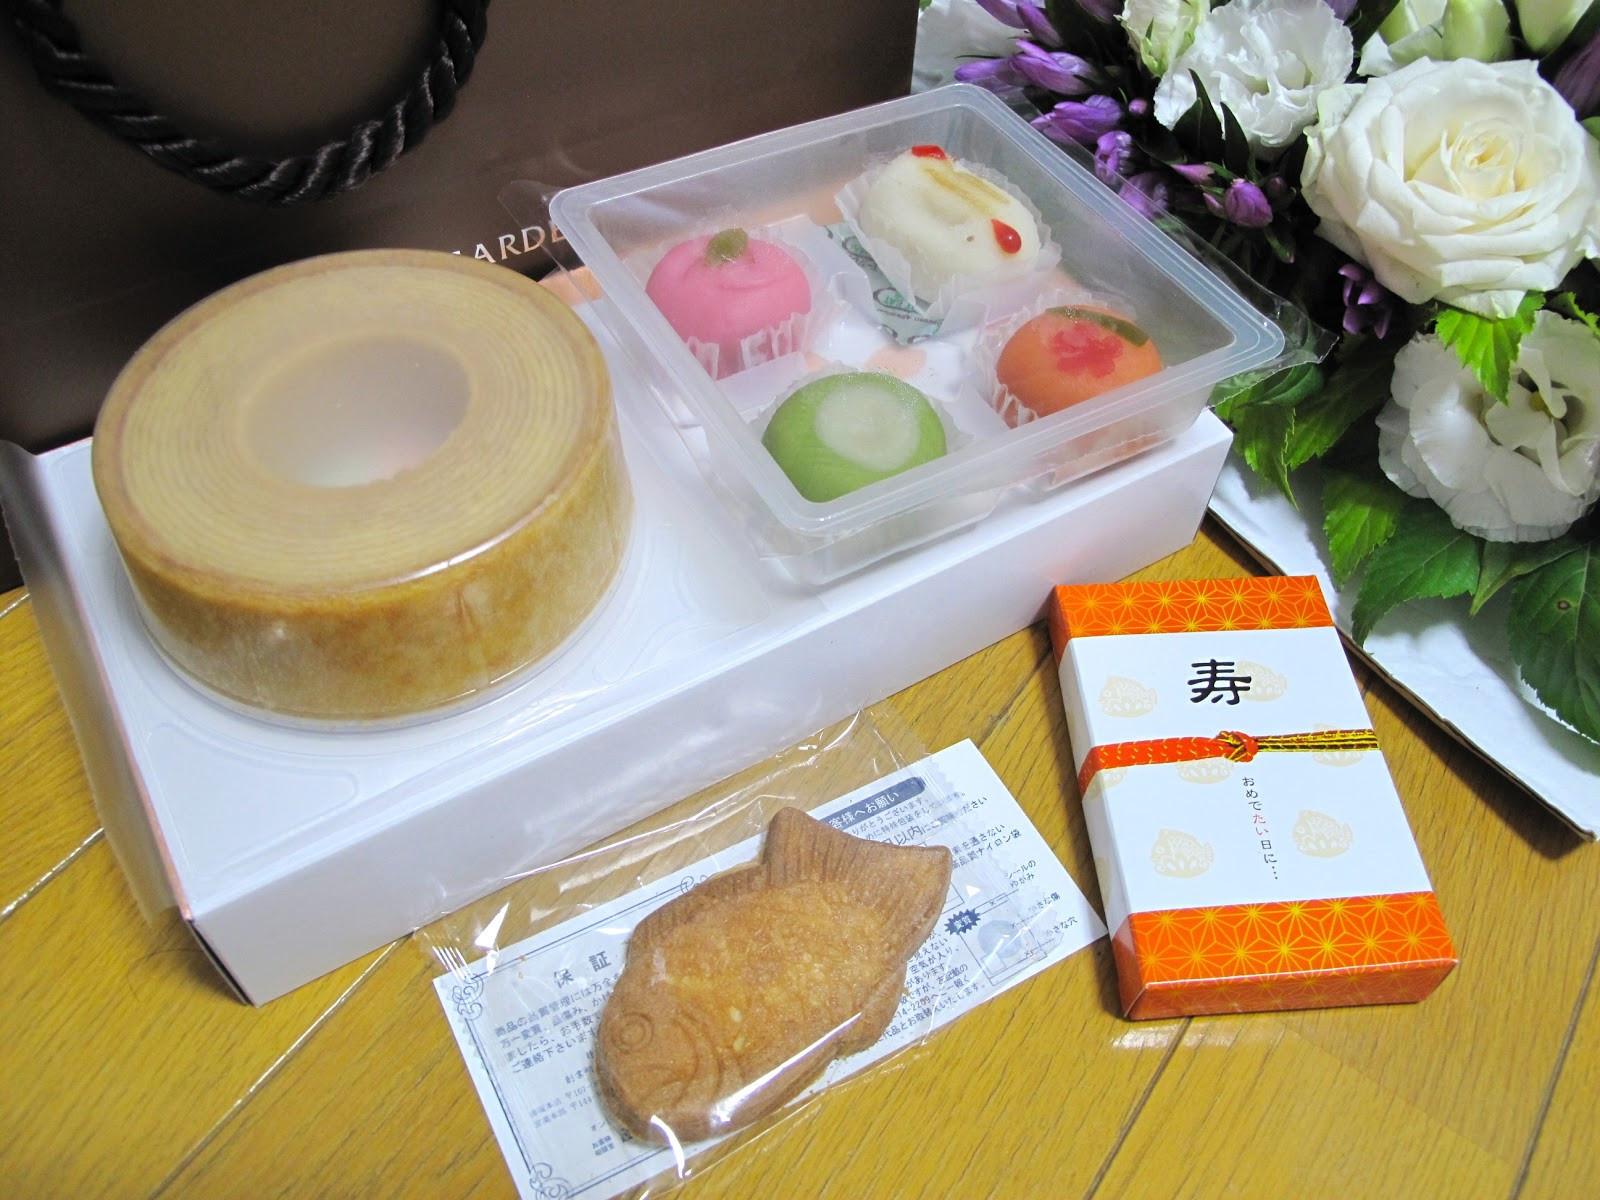 Japanese Wedding Gifts
 EVA ICS BLOG Traditional Japanese Wedding ceremony and